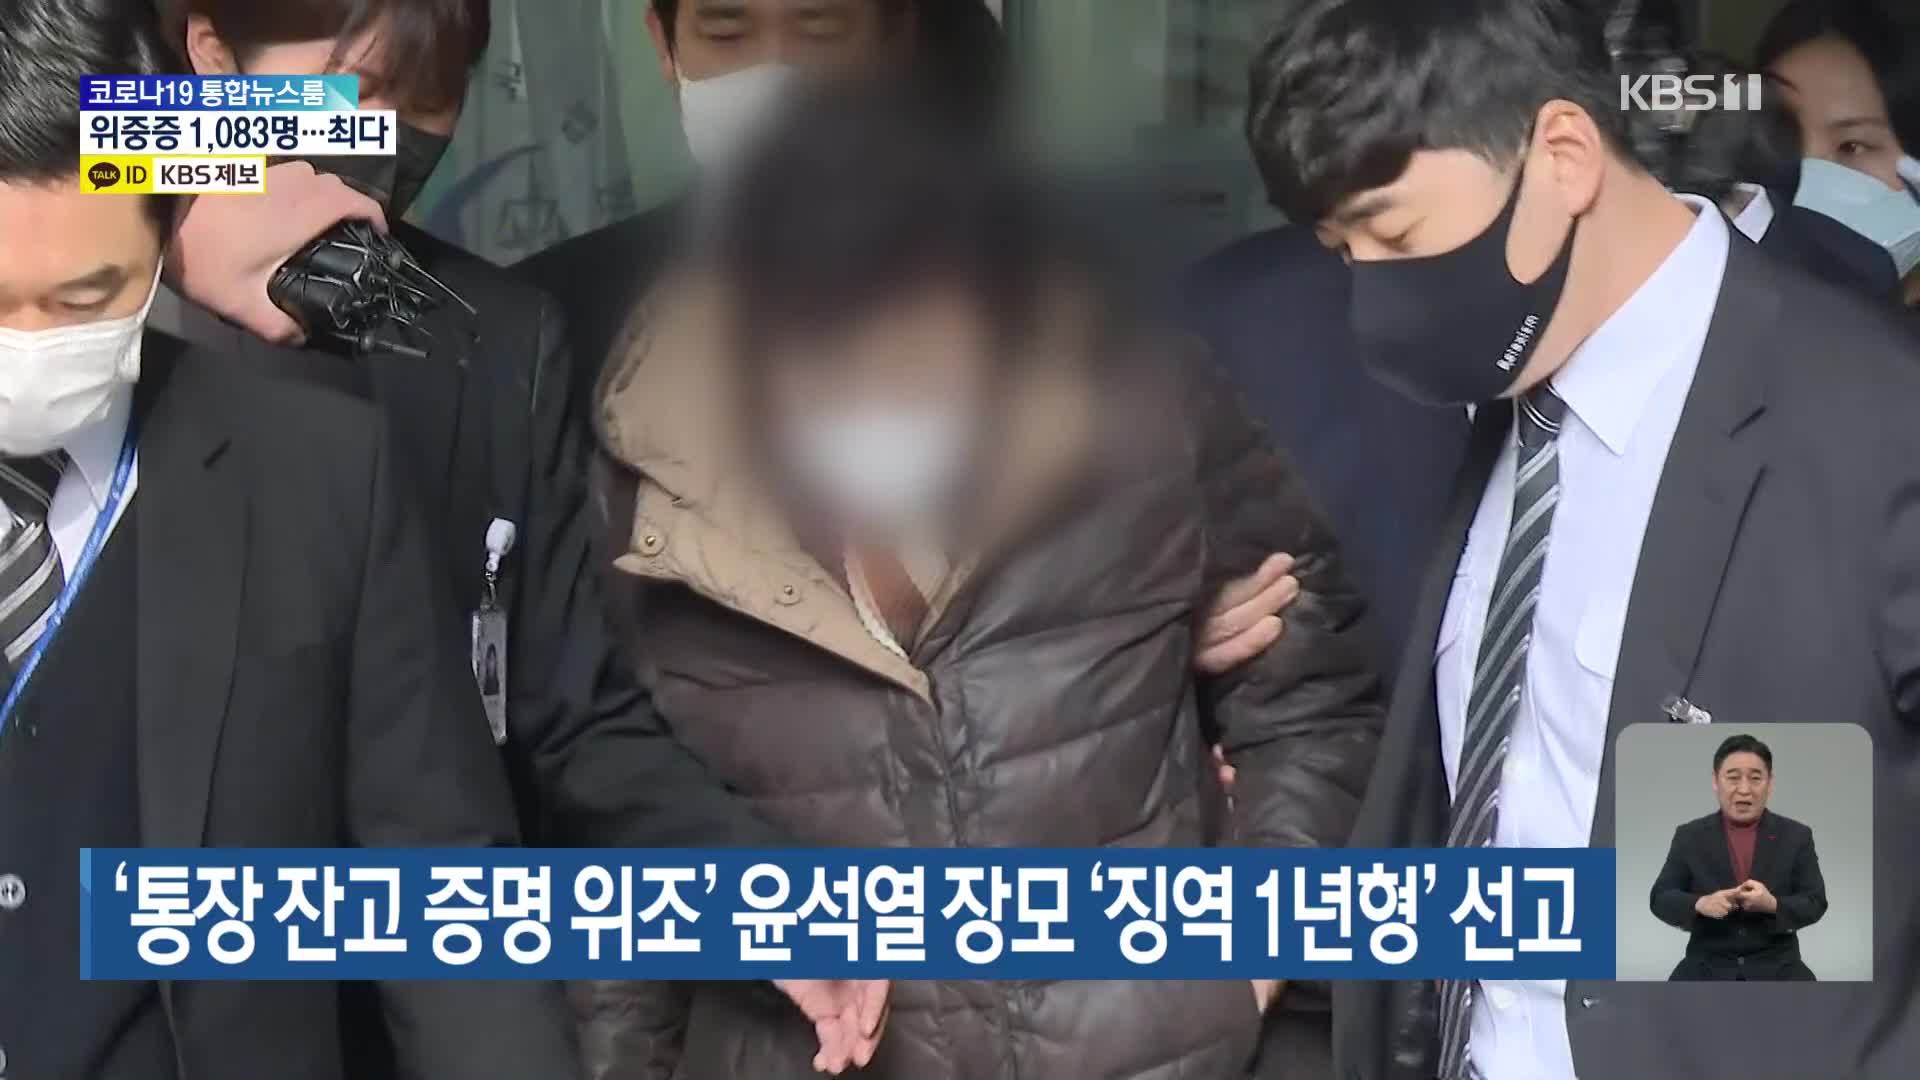 ‘통장 잔고 증명 위조’ 윤석열 장모 ‘징역 1년형’ 선고